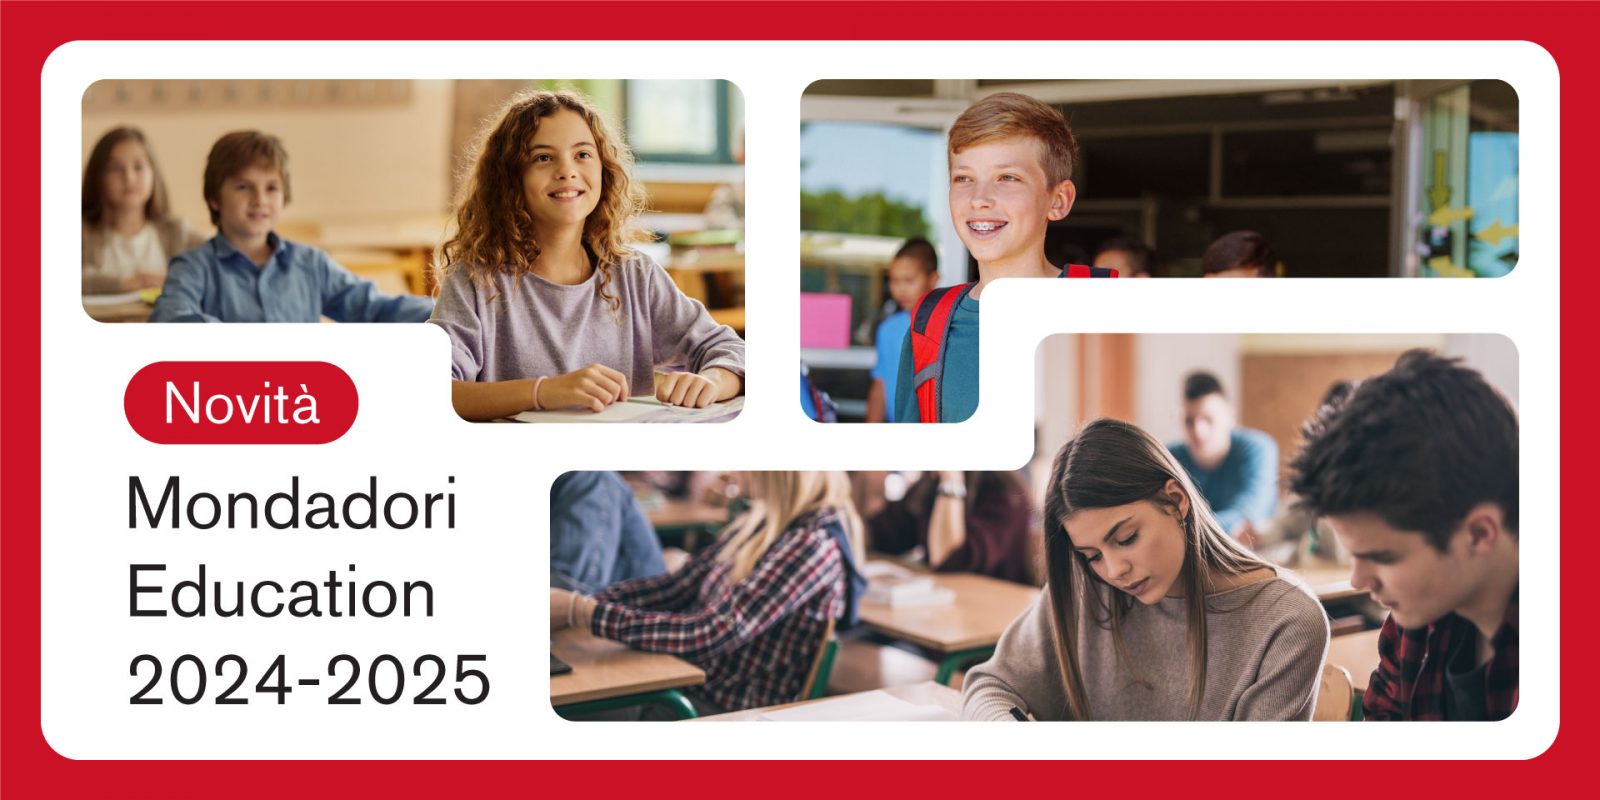 Devoto Oli Junior 2022 - Mondadori Education